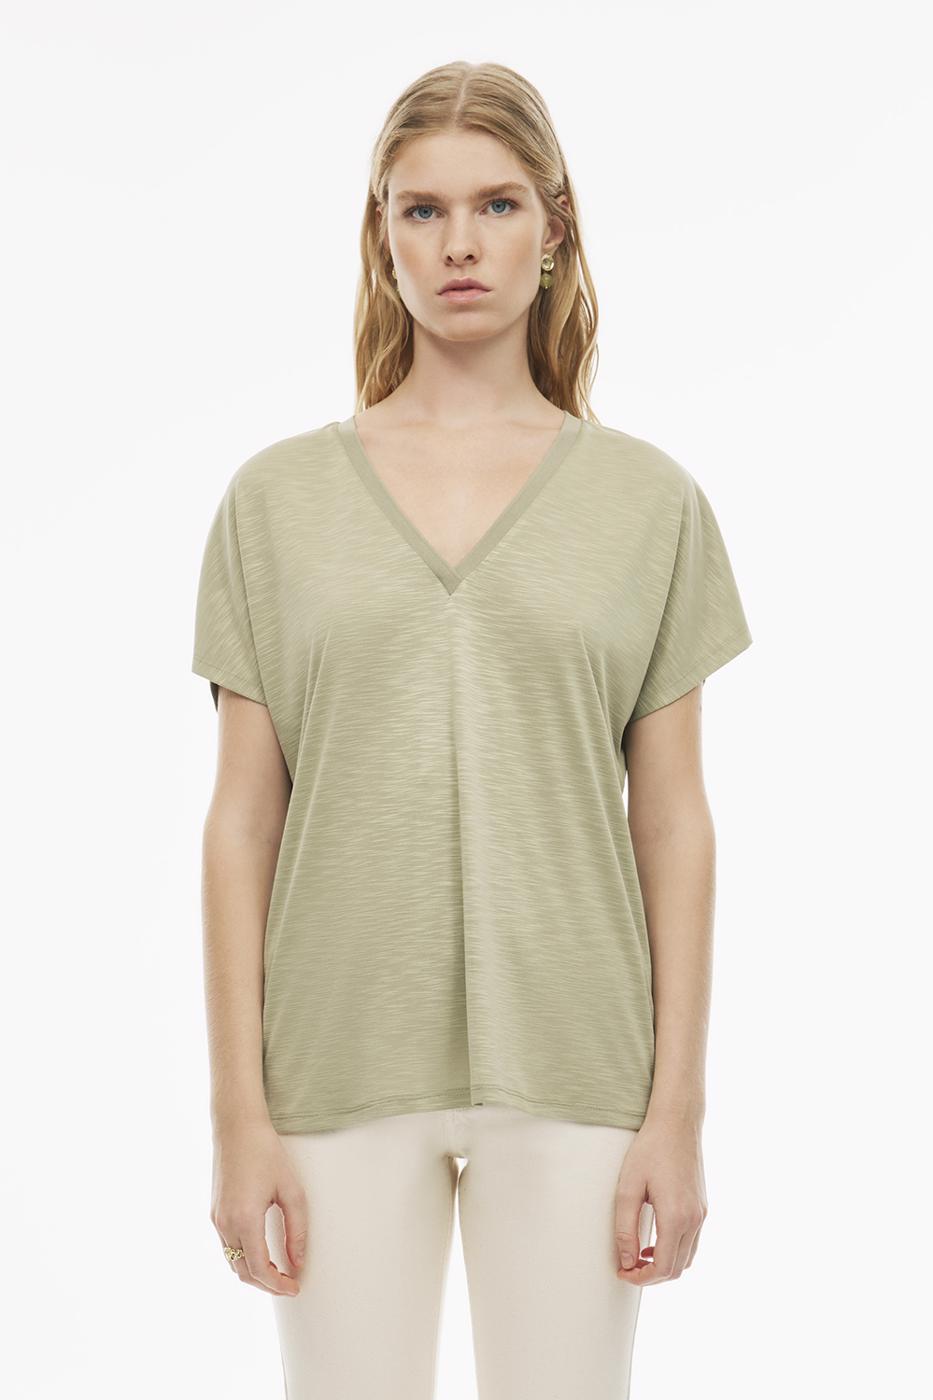 Larans Çay Ağacı Yeşili Renk Kadın Tişört